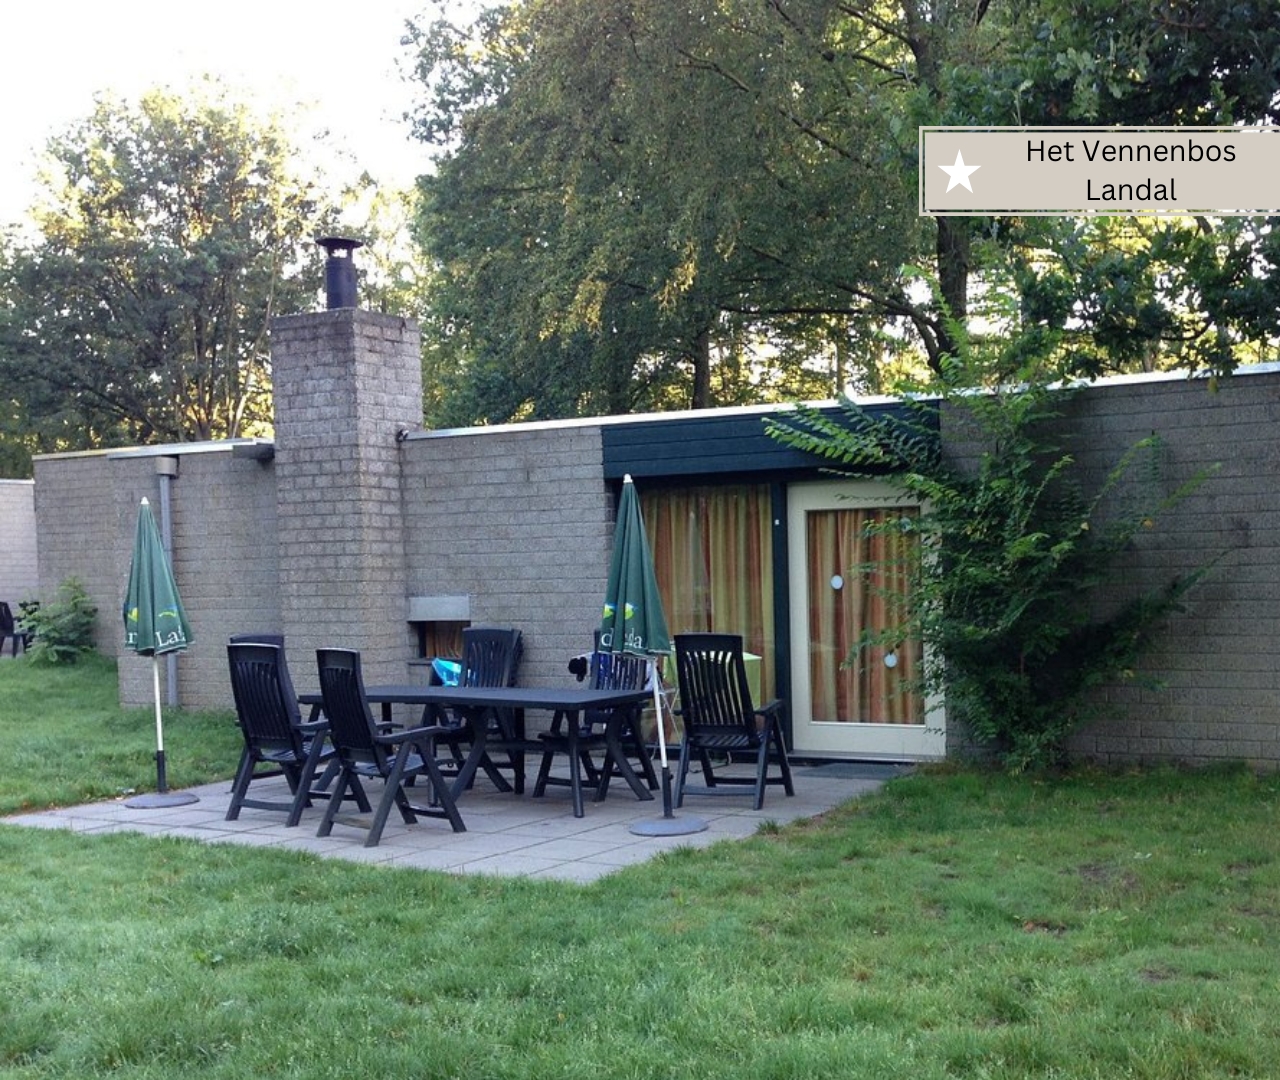 günstige und gute Ferienparks in Holland - Het Vennenbos (3)